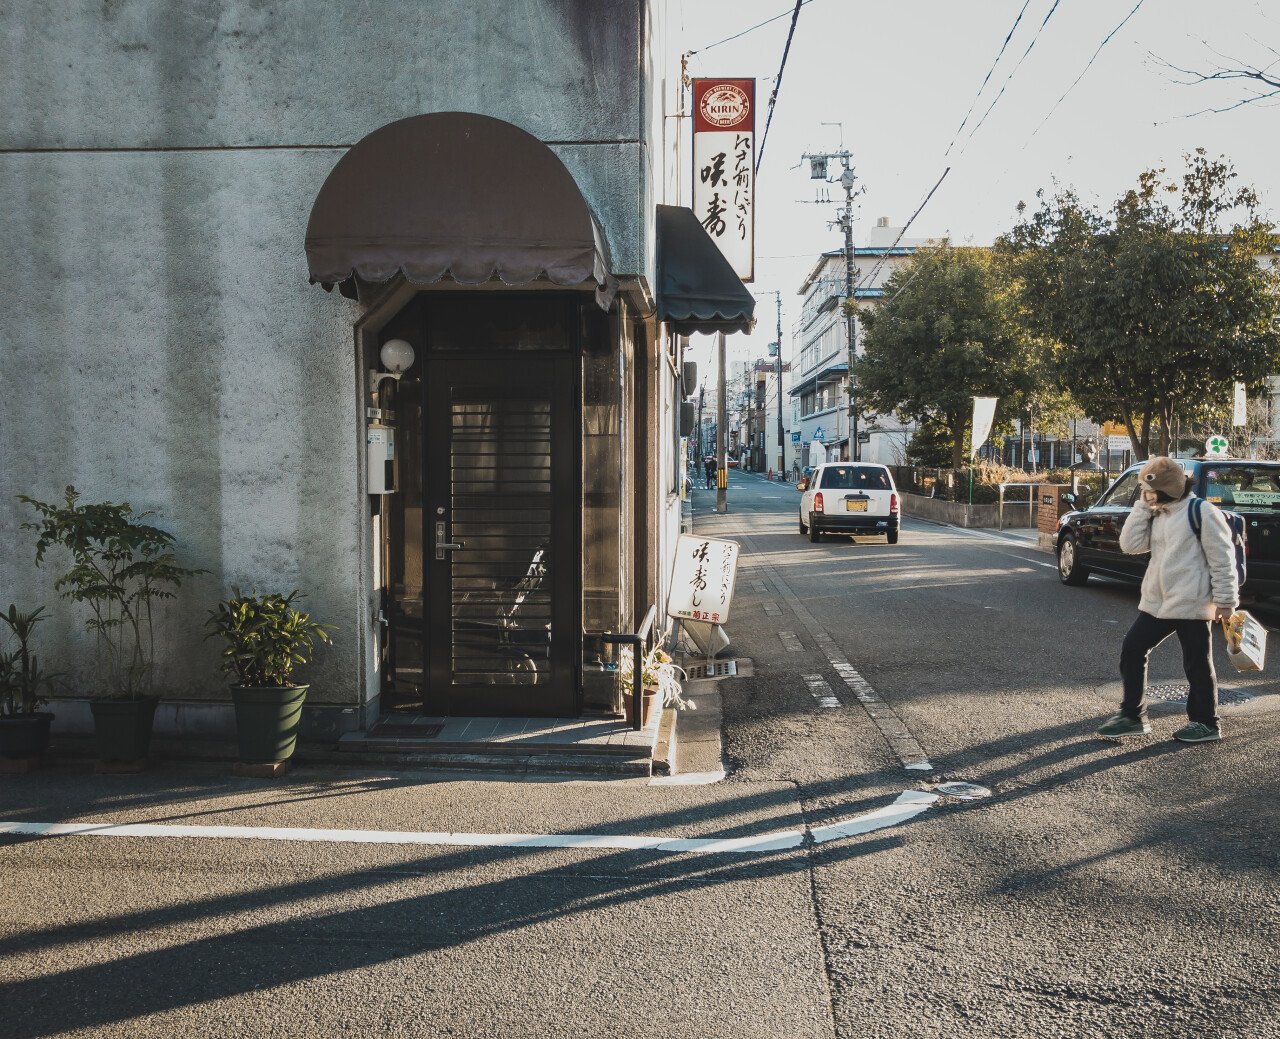 교토 길거리 3.jpg [여행기]일본 교토 4박5일 여행 - 2일 차 : 교토고쇼와 길거리 스냅